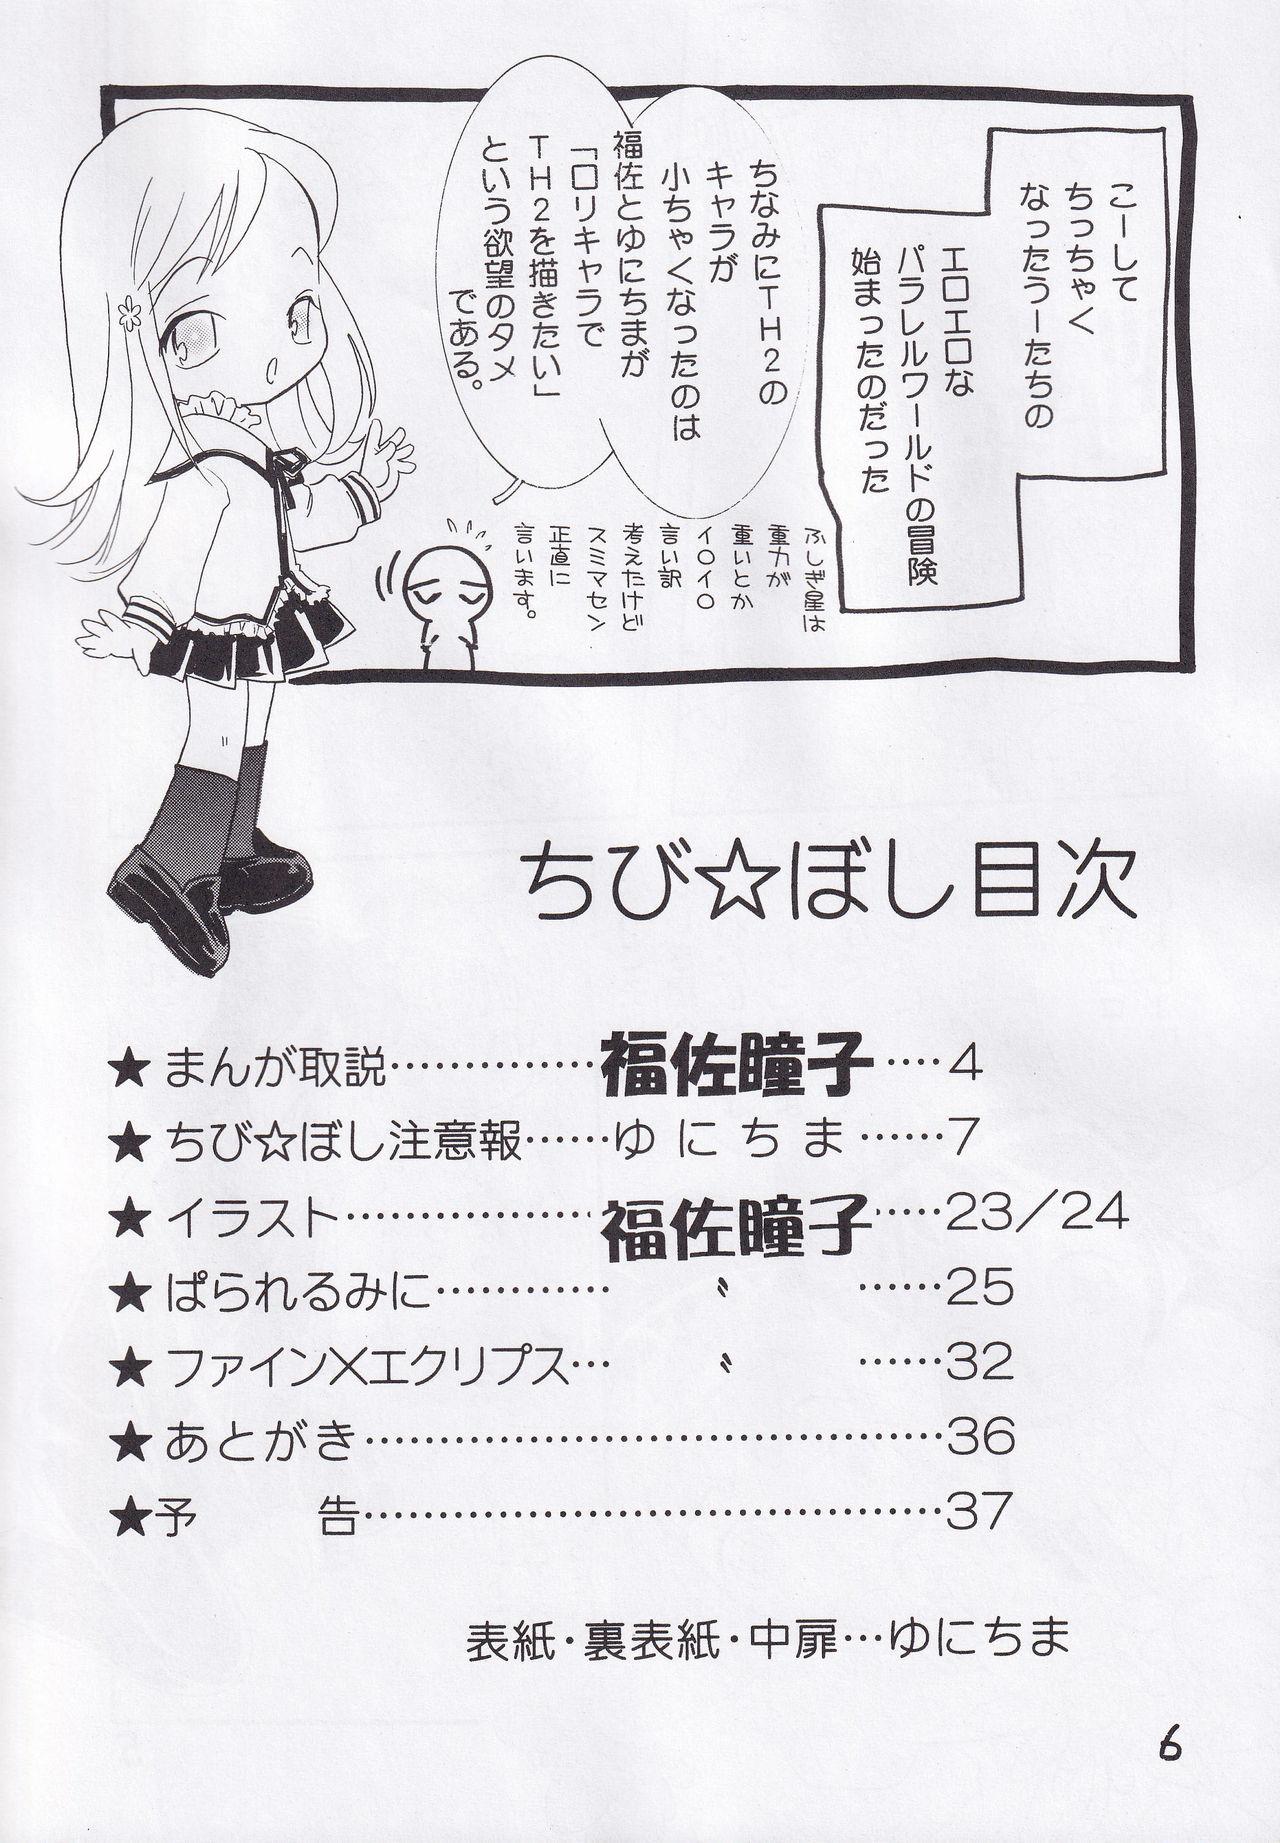 Hot Milf Chibi Hoshi - Toheart2 Fushigiboshi no futagohime Adult Toys - Page 5